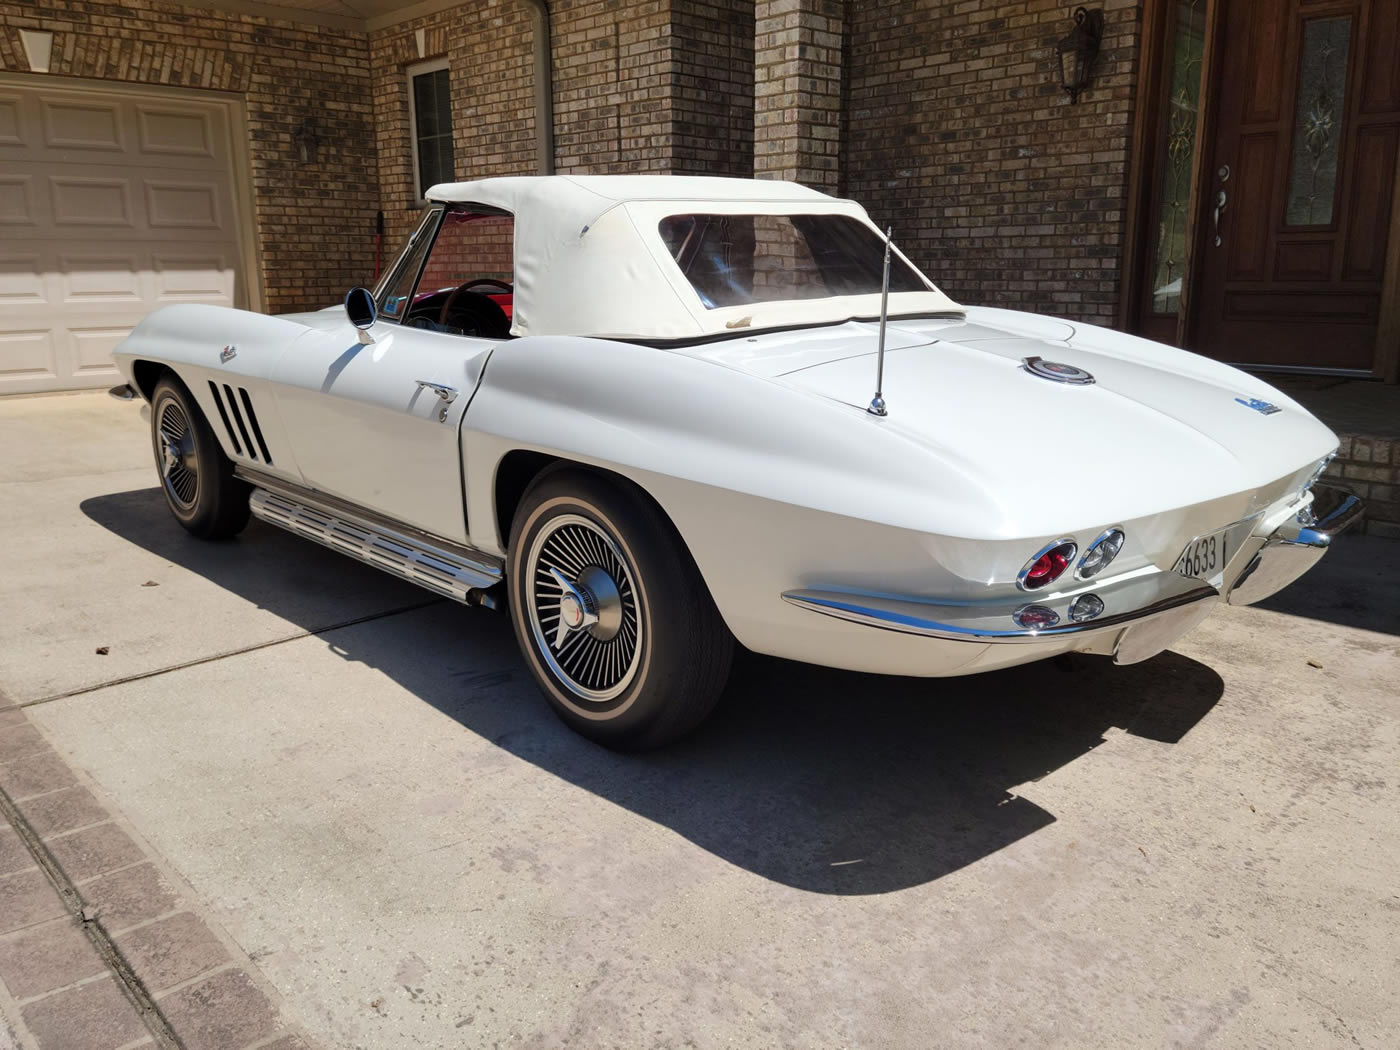 1966 Corvette Convertible in Ermine White